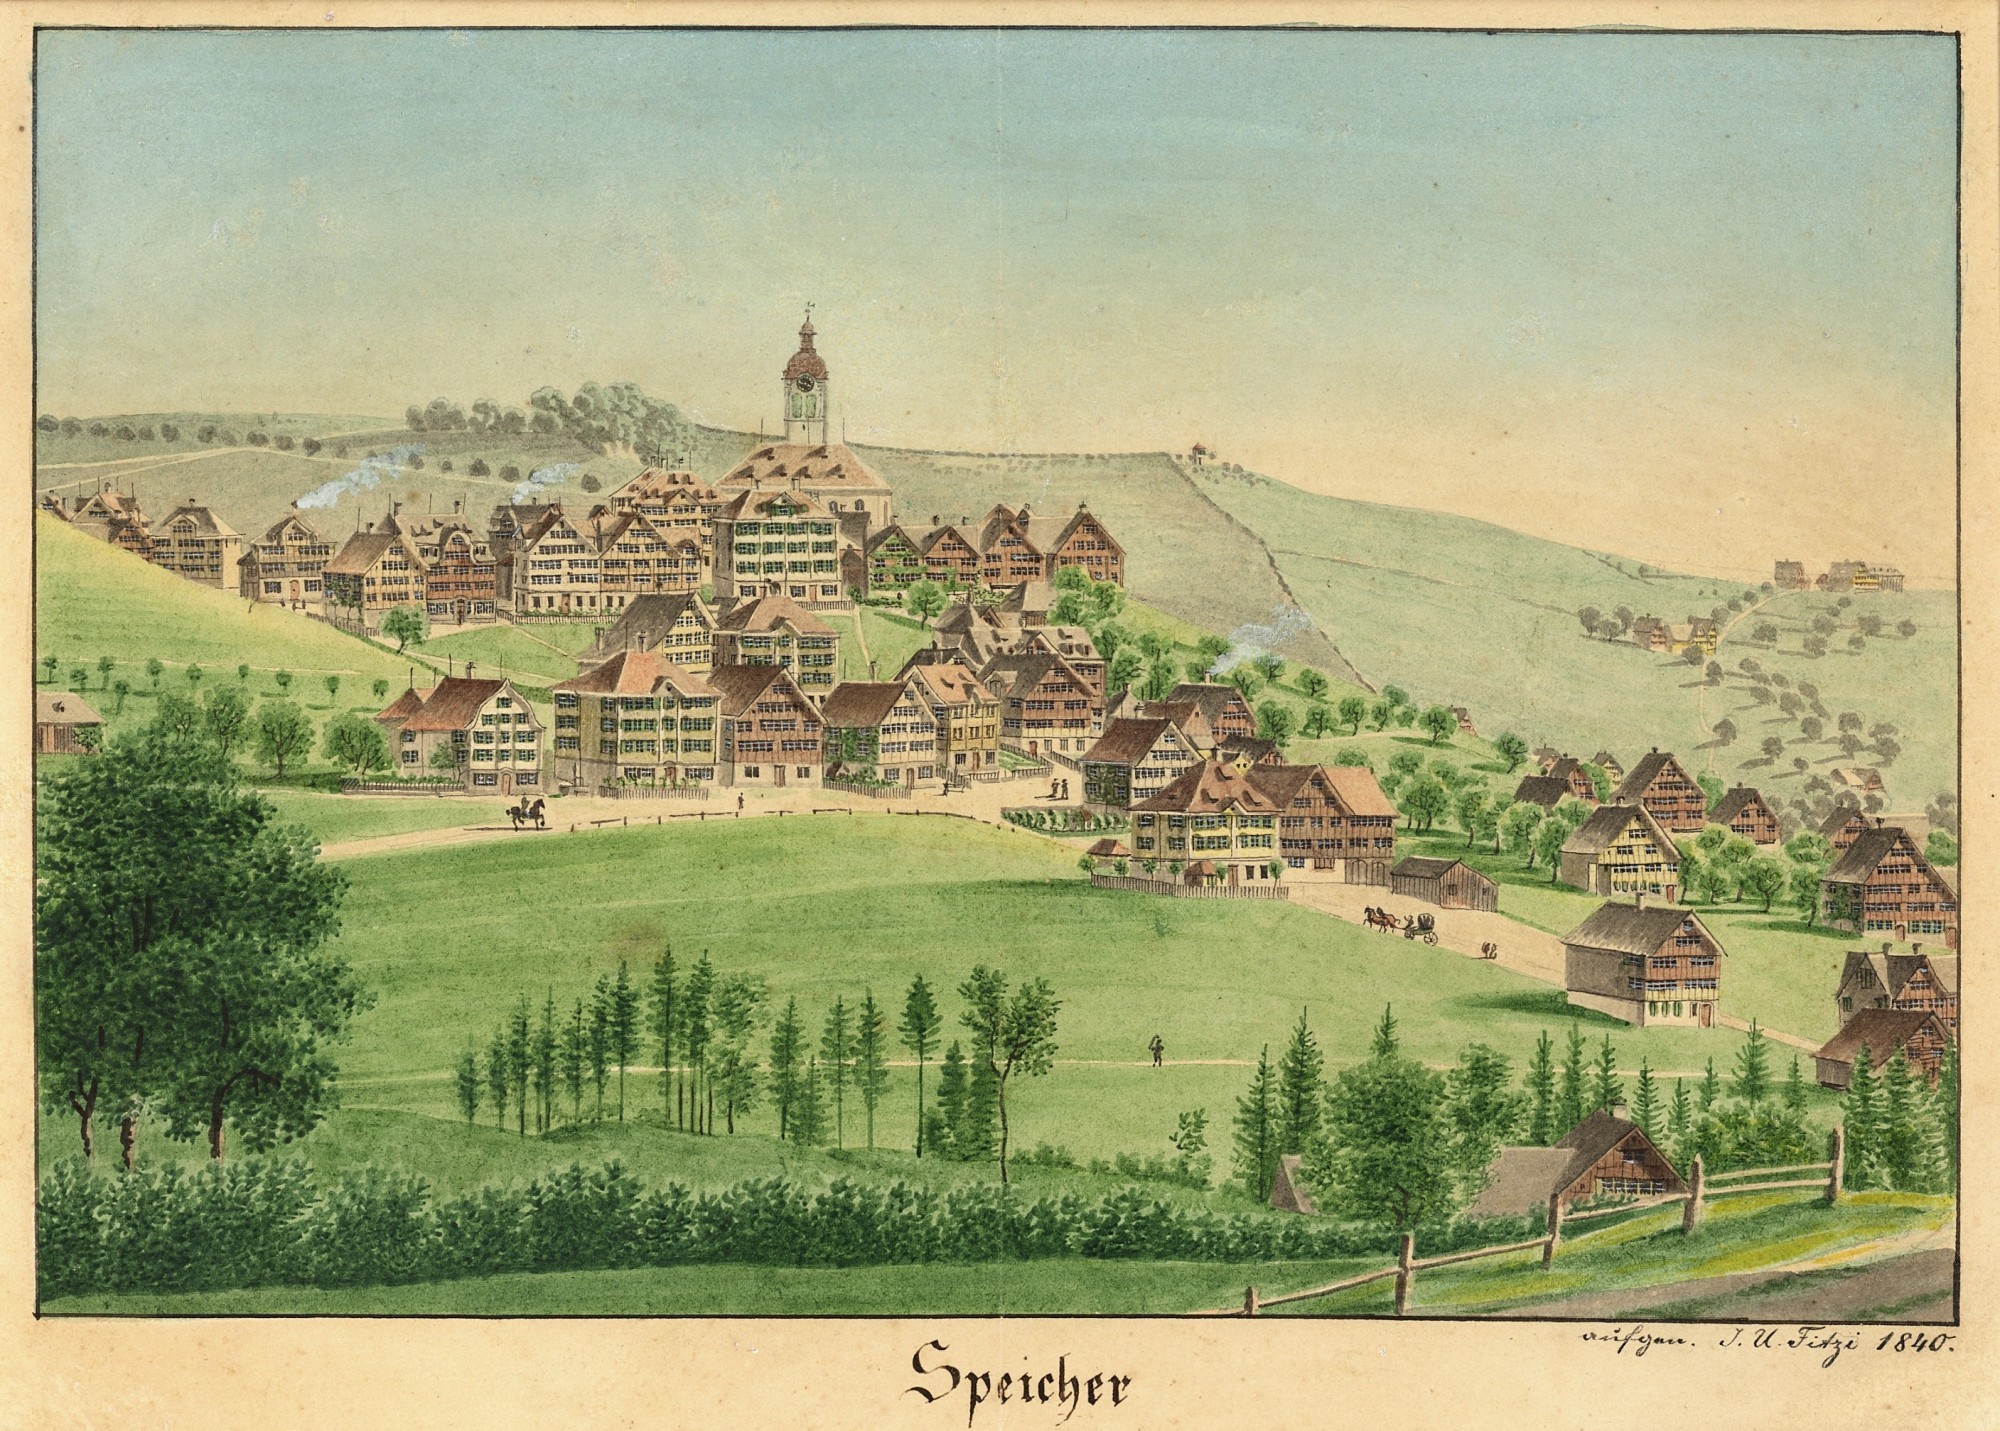 Dorf Speicher in Appenzell Ausserrhoden um 1840